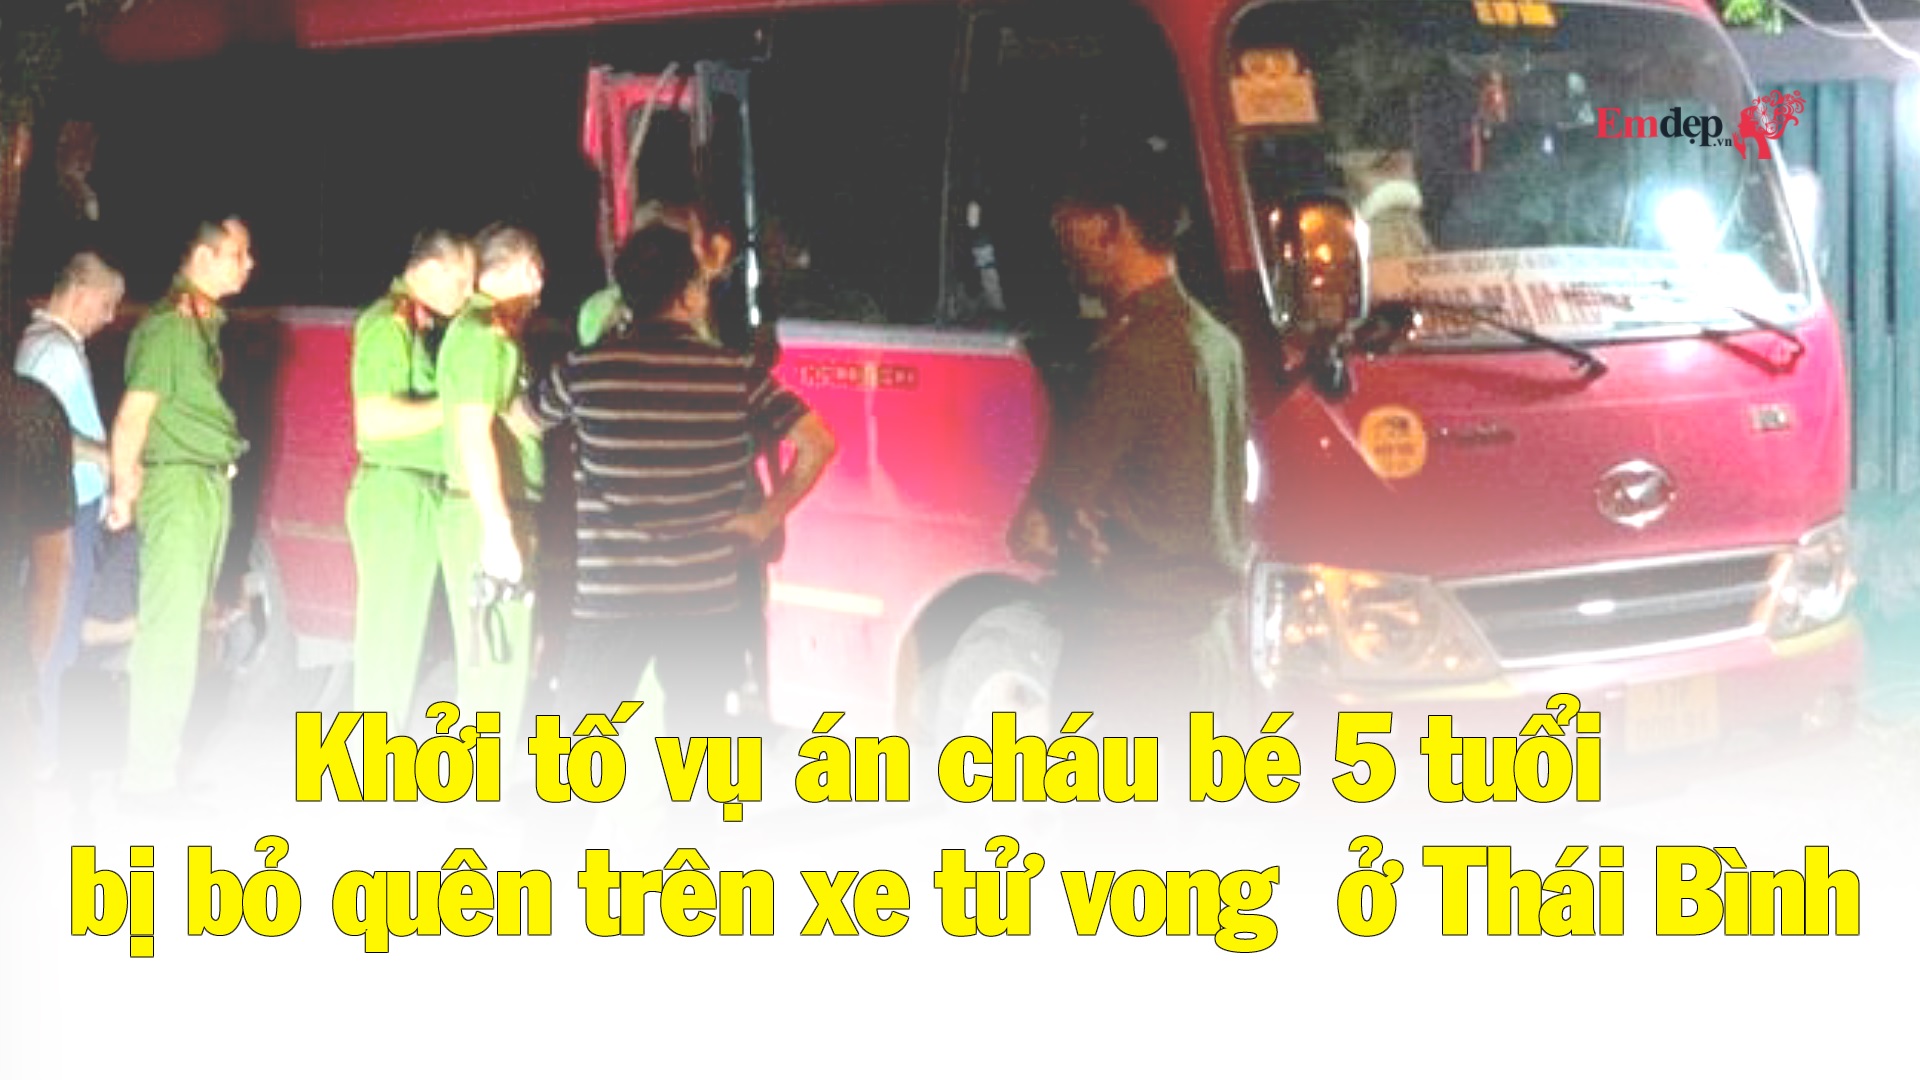 Khởi tố vụ án cháu bé 5 tuổi bị bỏ quên trên xe tử vong ở Thái Bình